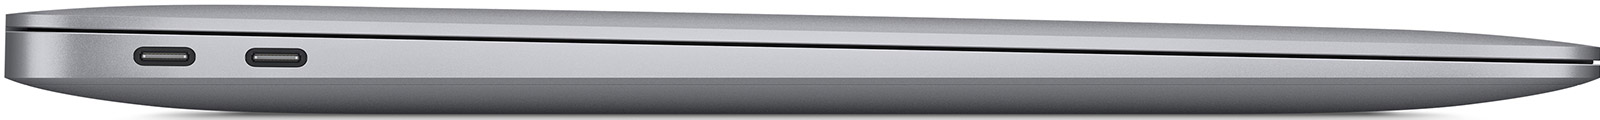 Apple-MacBook-Air-13-3-M1-8-Core-16-GB-2-TB-8-Core-Grafik-Space-Grau-CH-05.jpg